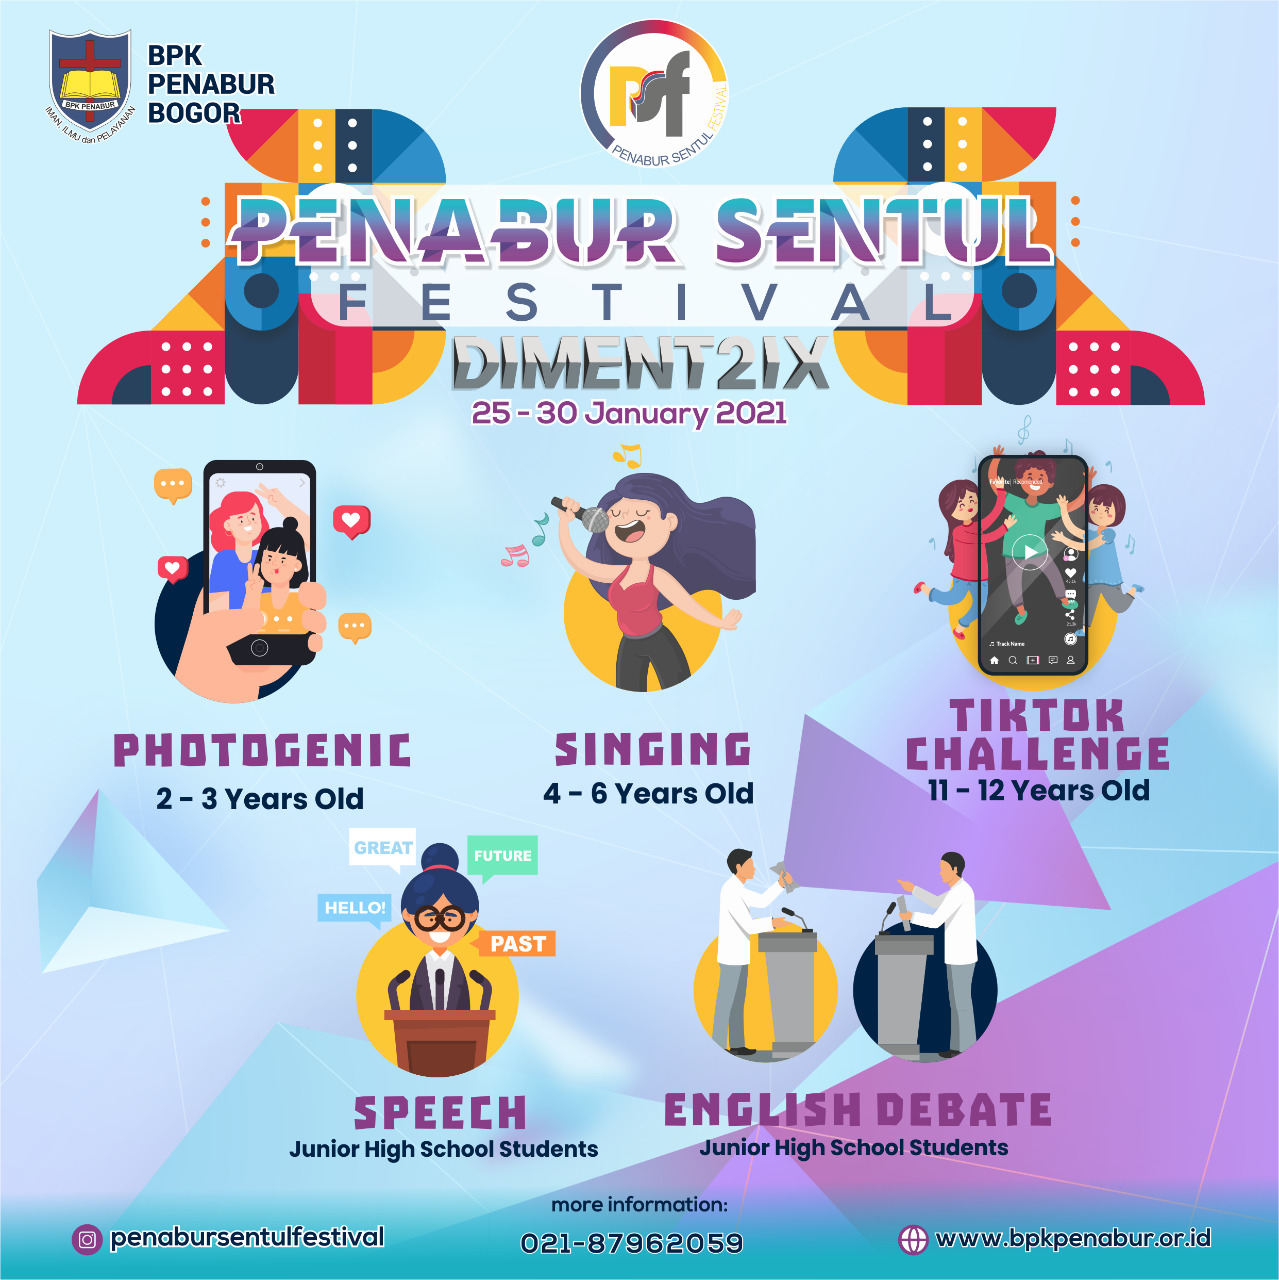 PENABUR Sentul Festival 2021